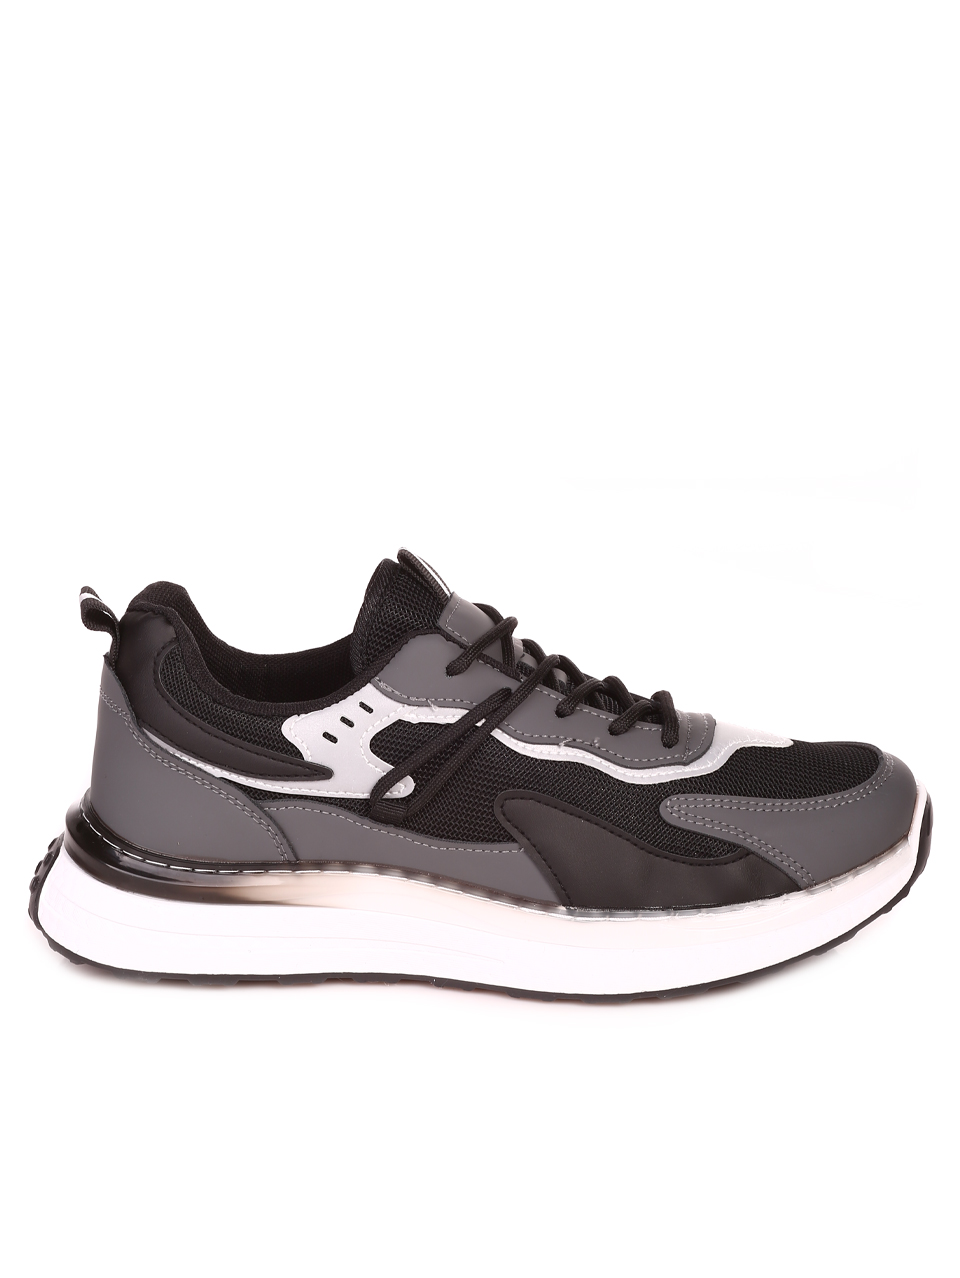 Ежедневни мъжки комфортни обувки в черно и сиво  7U-23573 black/grey